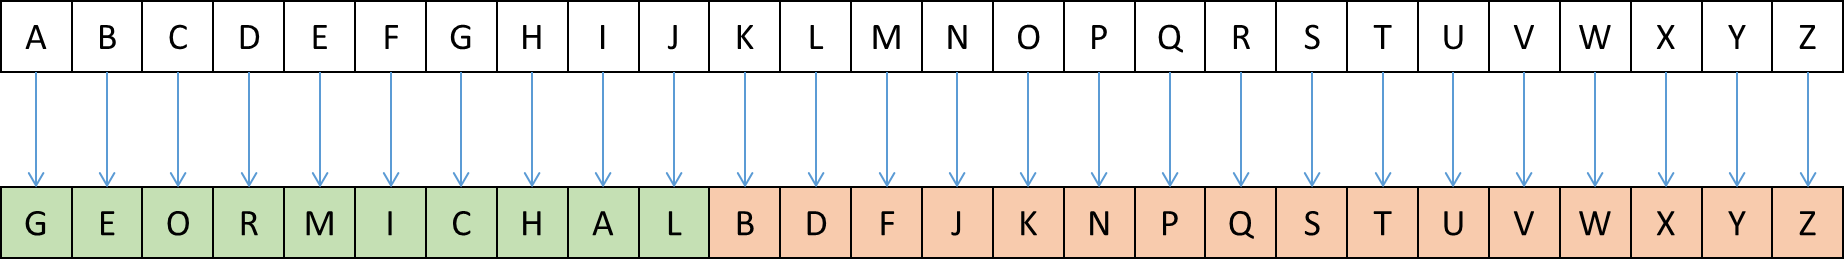 encode alphabet